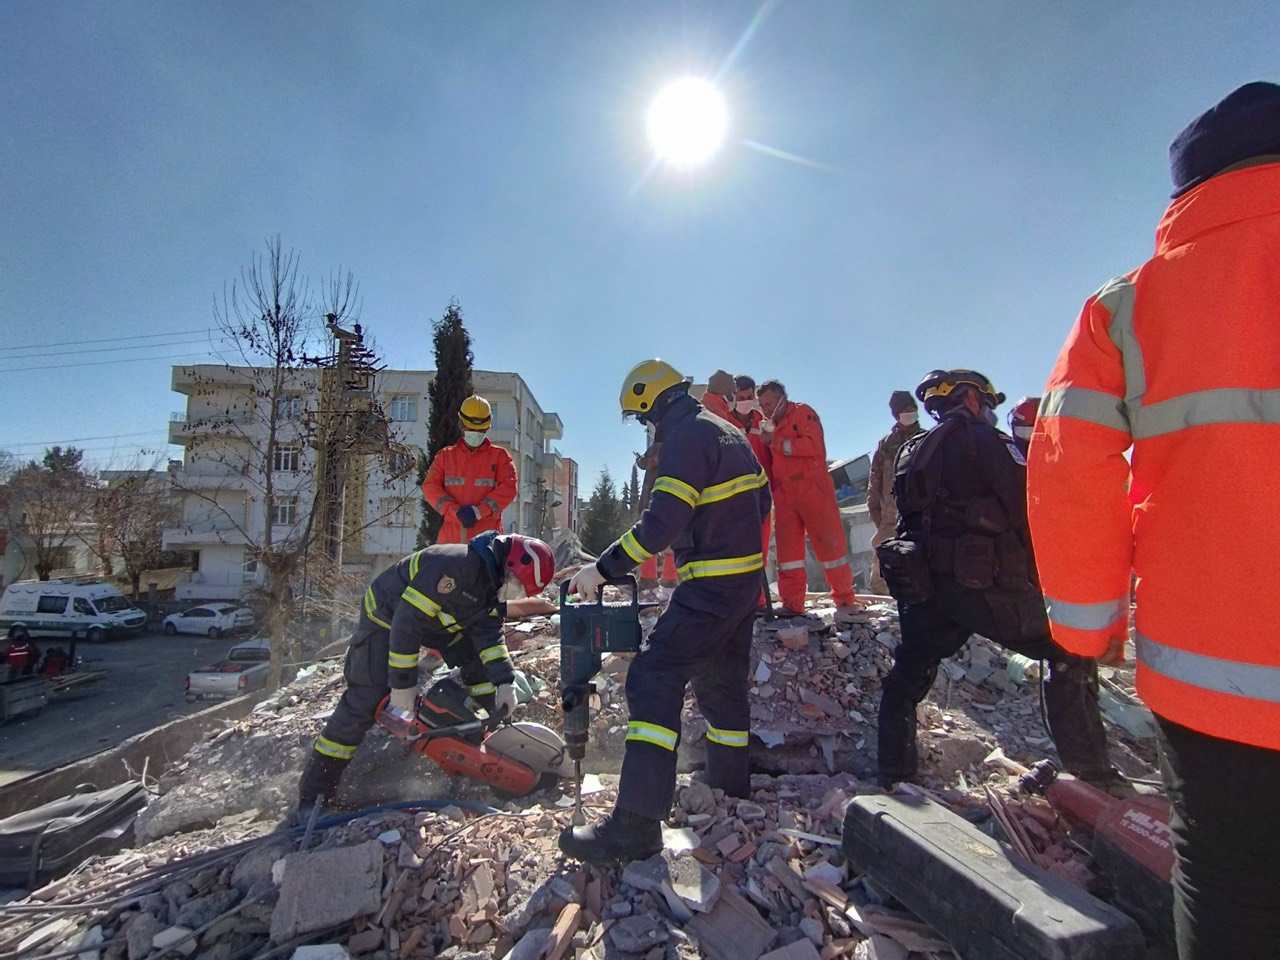 Tâm sự của đại úy công an tại hiện trường thảm họa động đất ở Thổ Nhĩ Kỳ - Ảnh 8.